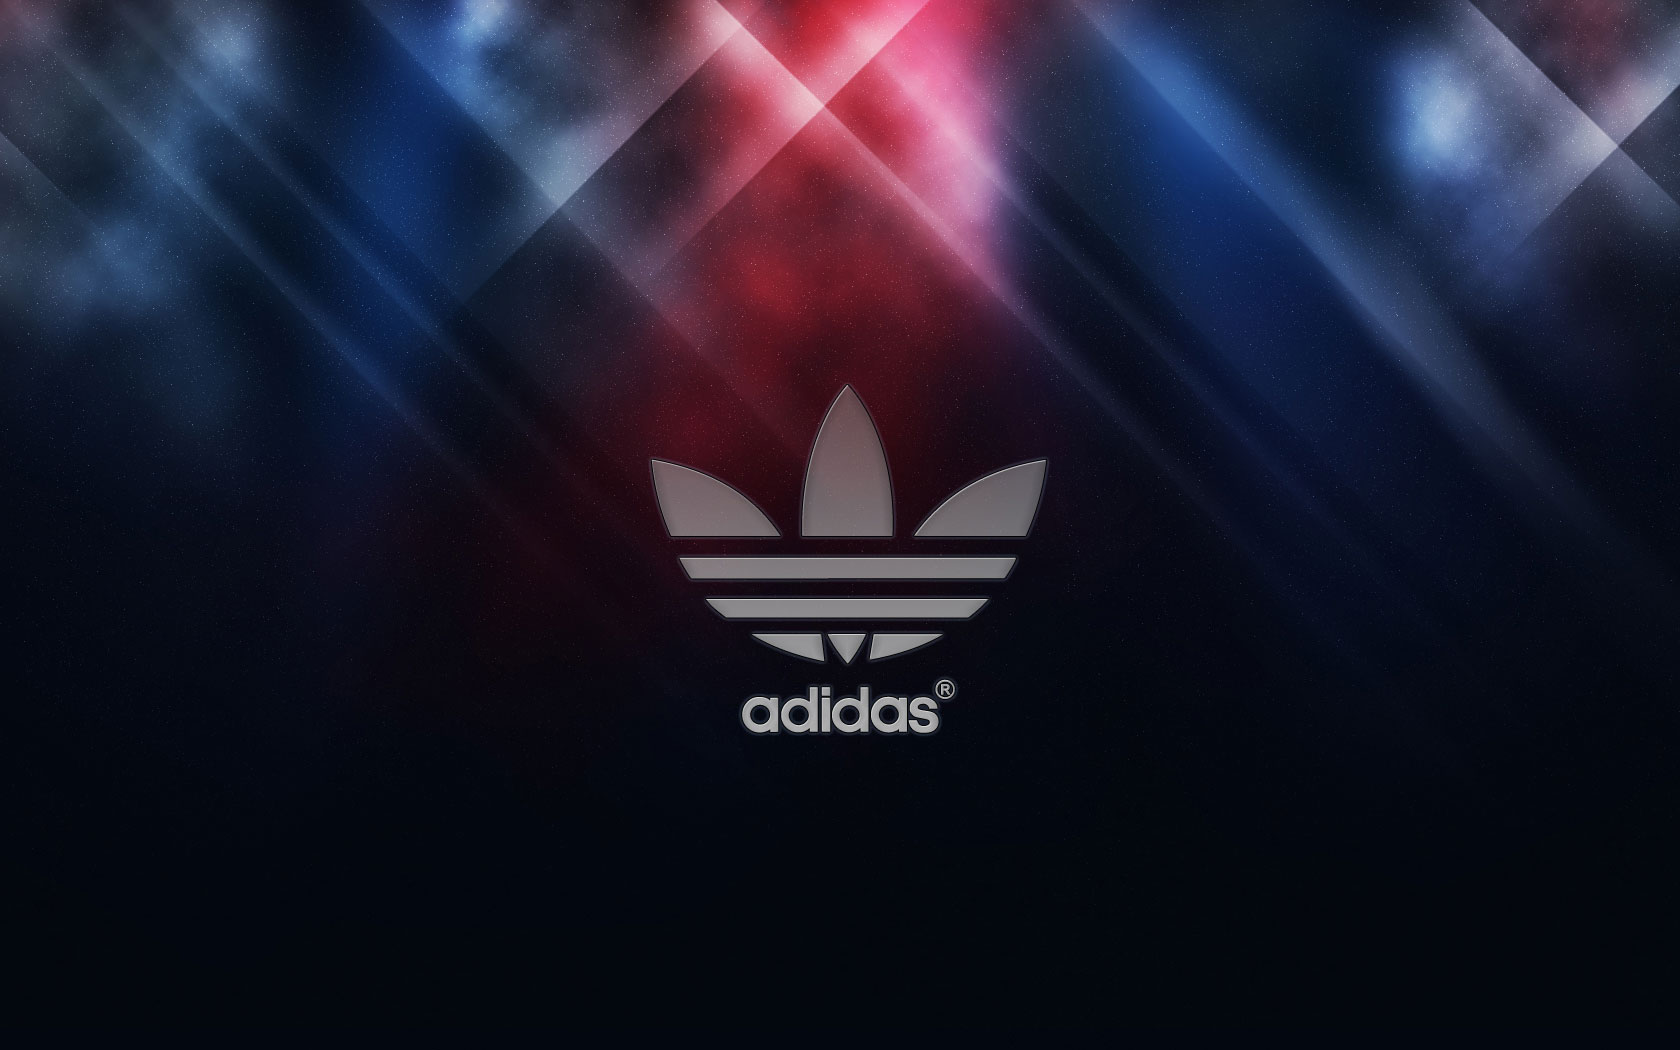 Description Adidas Logo Wallpaper 2013 is a hi res Wallpaper for pc